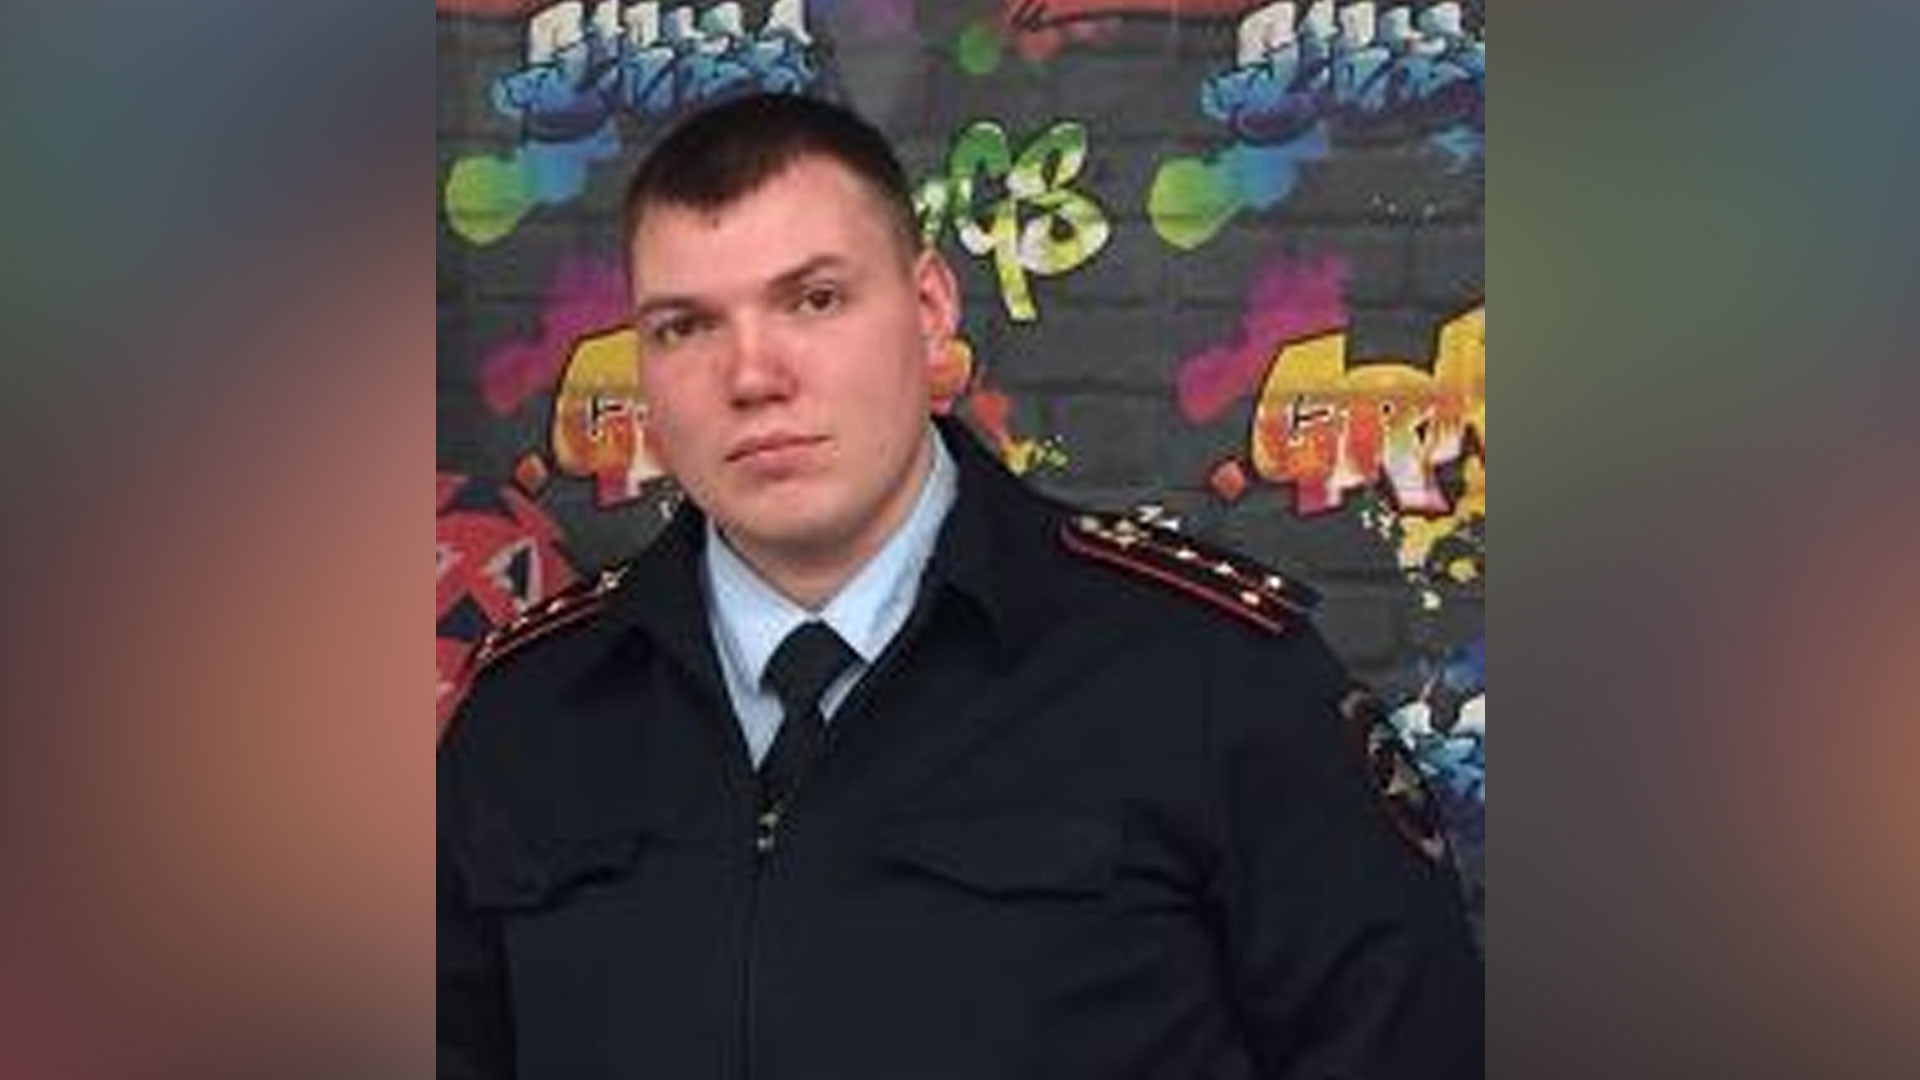 Задержанный майор полиции А. Хвенько. Фото © Соцсети
